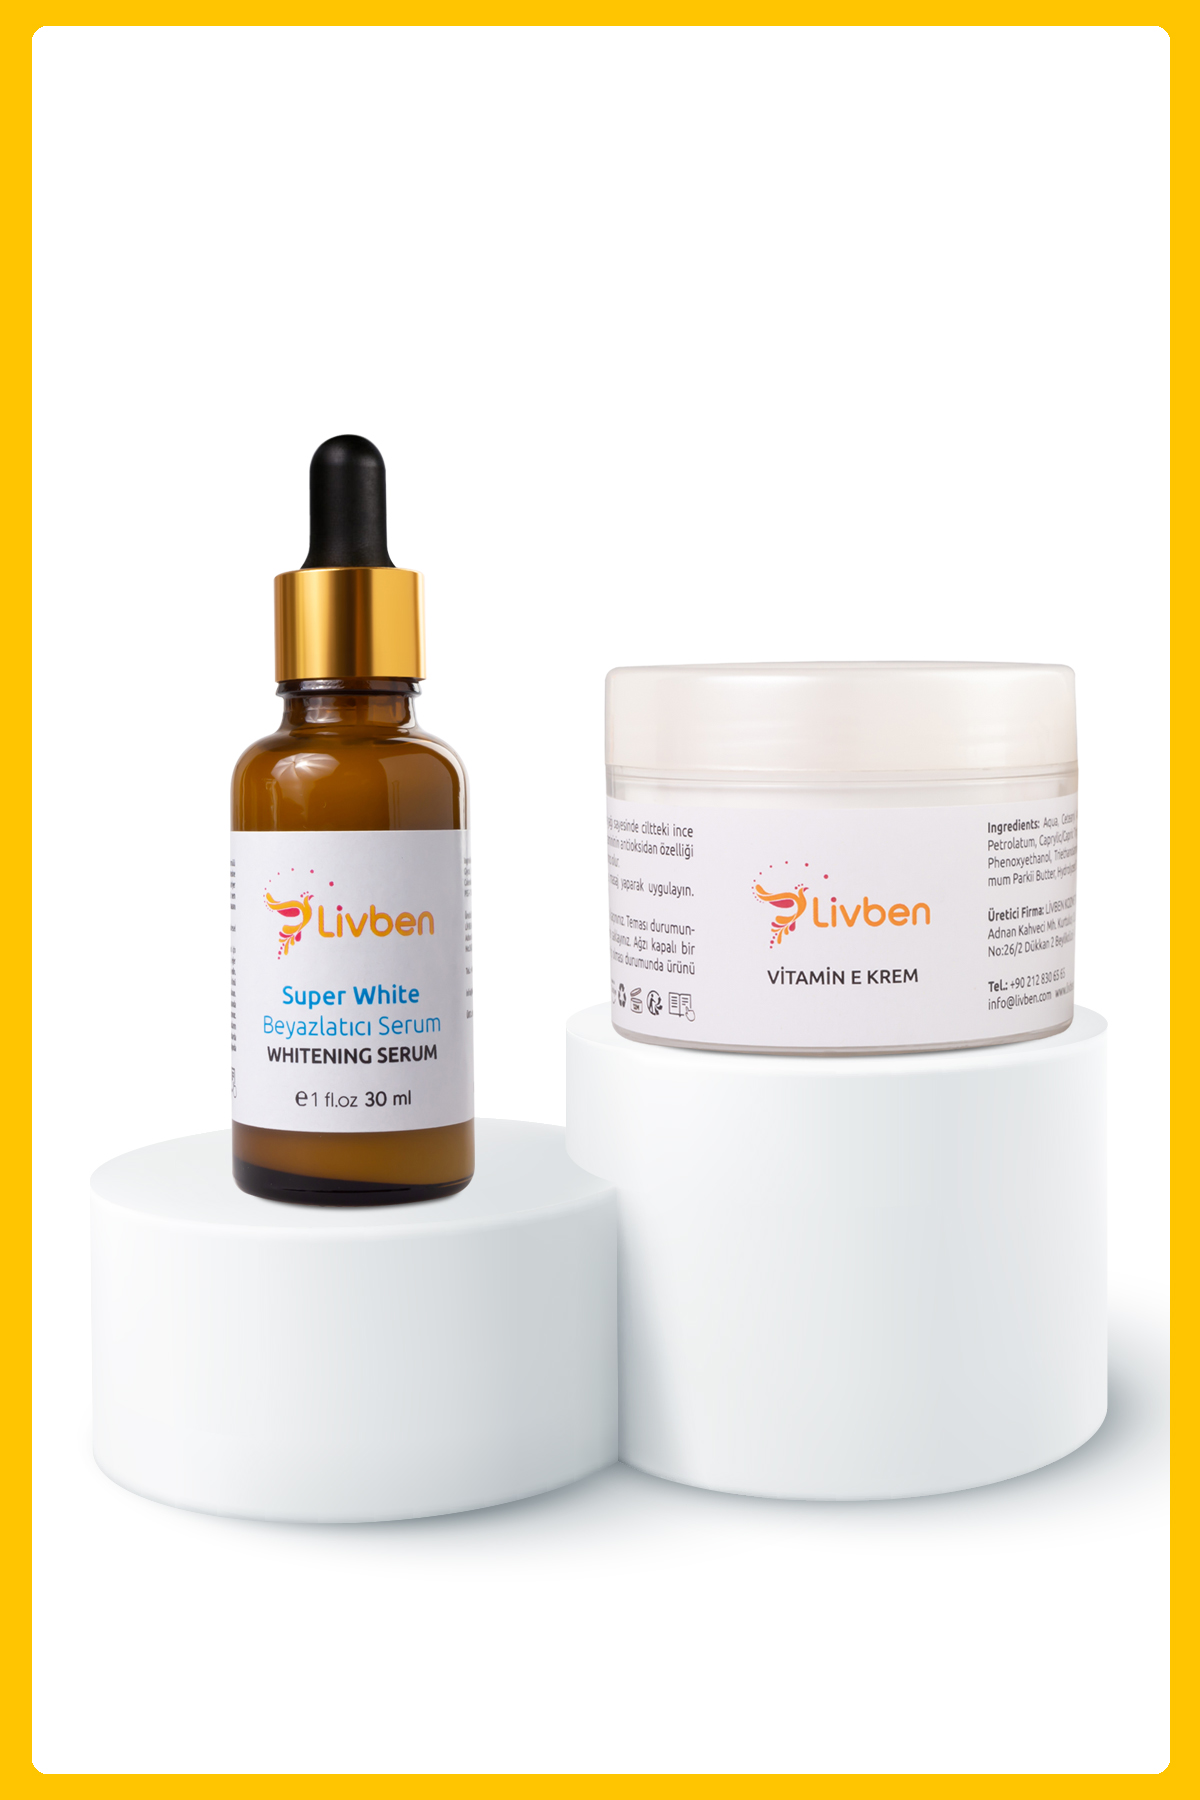 Livben ® Cilt Tonu Eşitleyici Beyazlatıcı Serum 30 ml ve Yaşlanma Karşıtı Vitamin E Krem 100 Ml